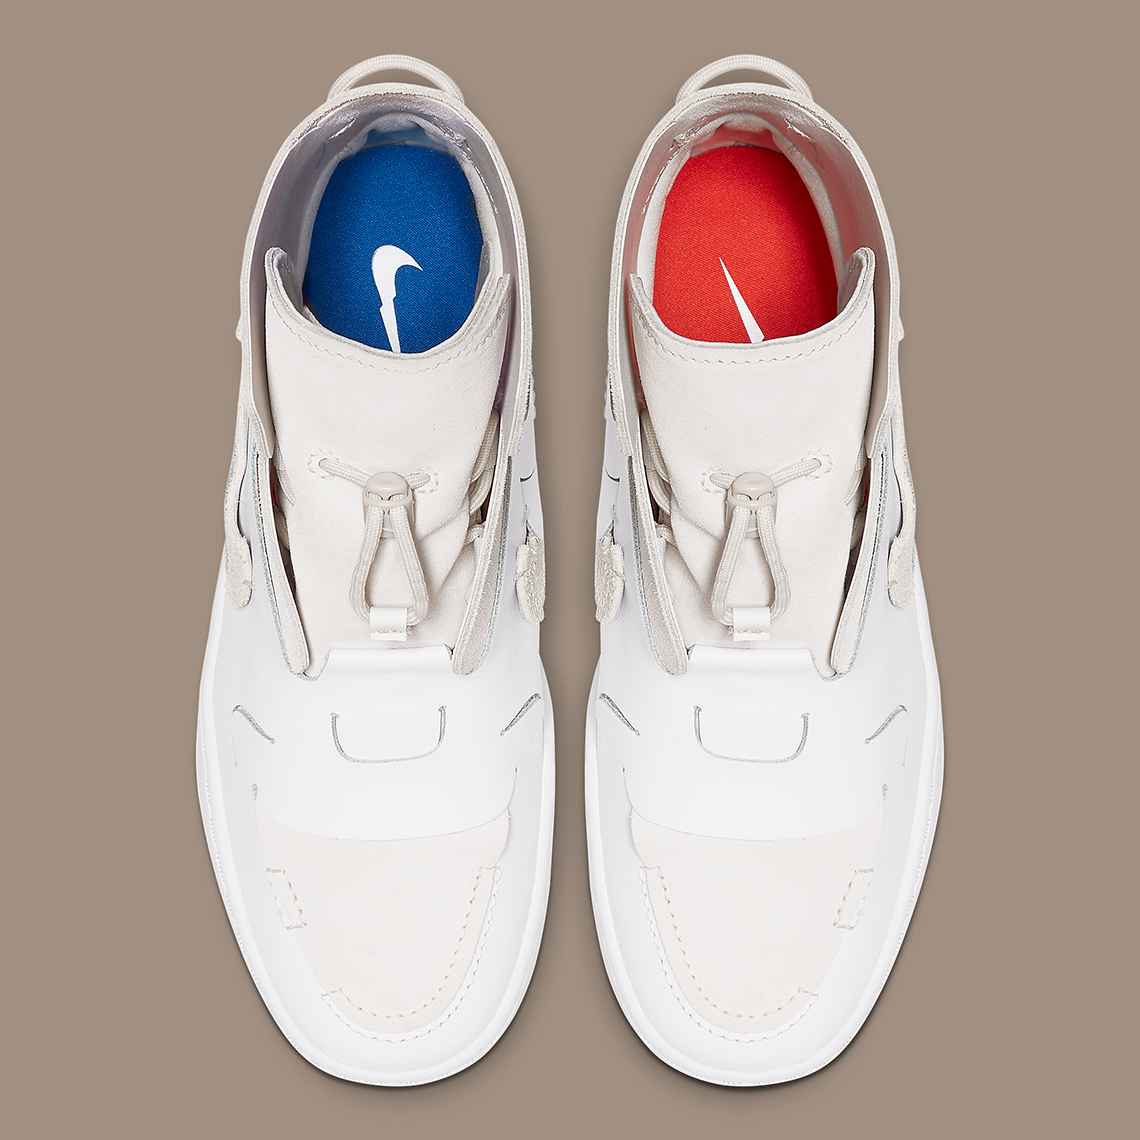 twee Bekend Tussendoortje Nike Vandalized LX White Tan BQ3611-100 Release Info | SneakerNews.com